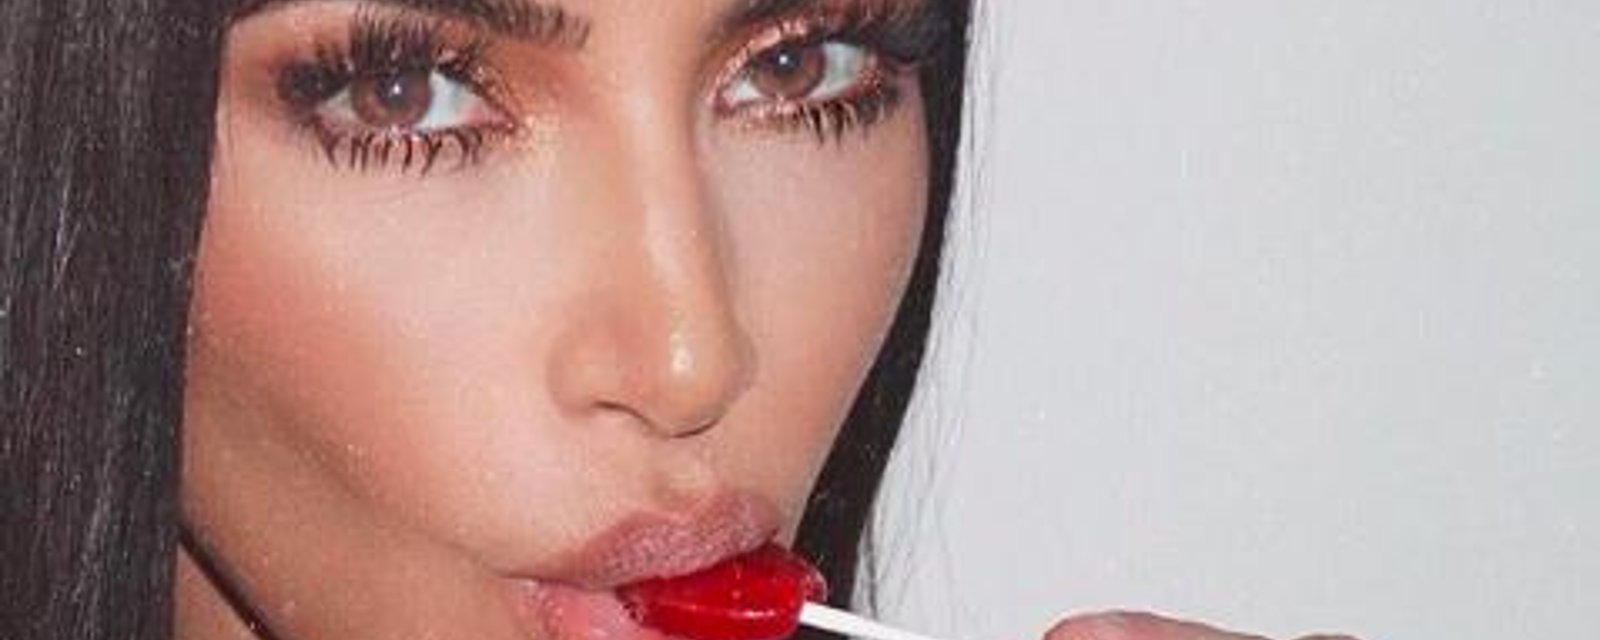 Kim Kardashian met le feu au Web en publiant une nouvelle photo d'elle complètement nue